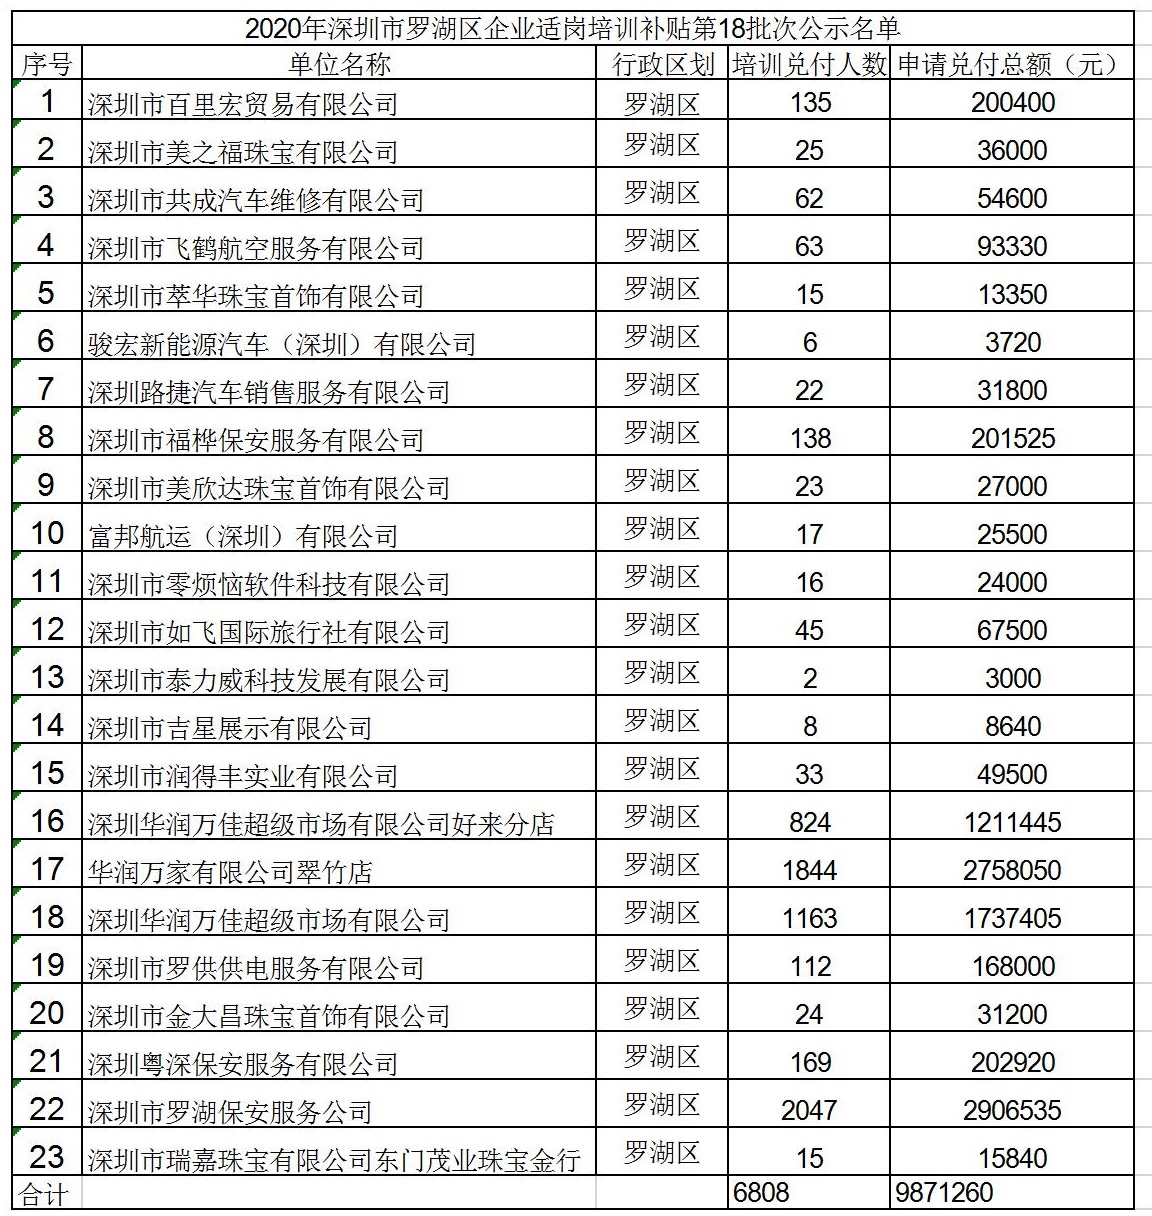 2020年深圳市罗湖区企业适岗培训补贴第18批次公示名单.jpg